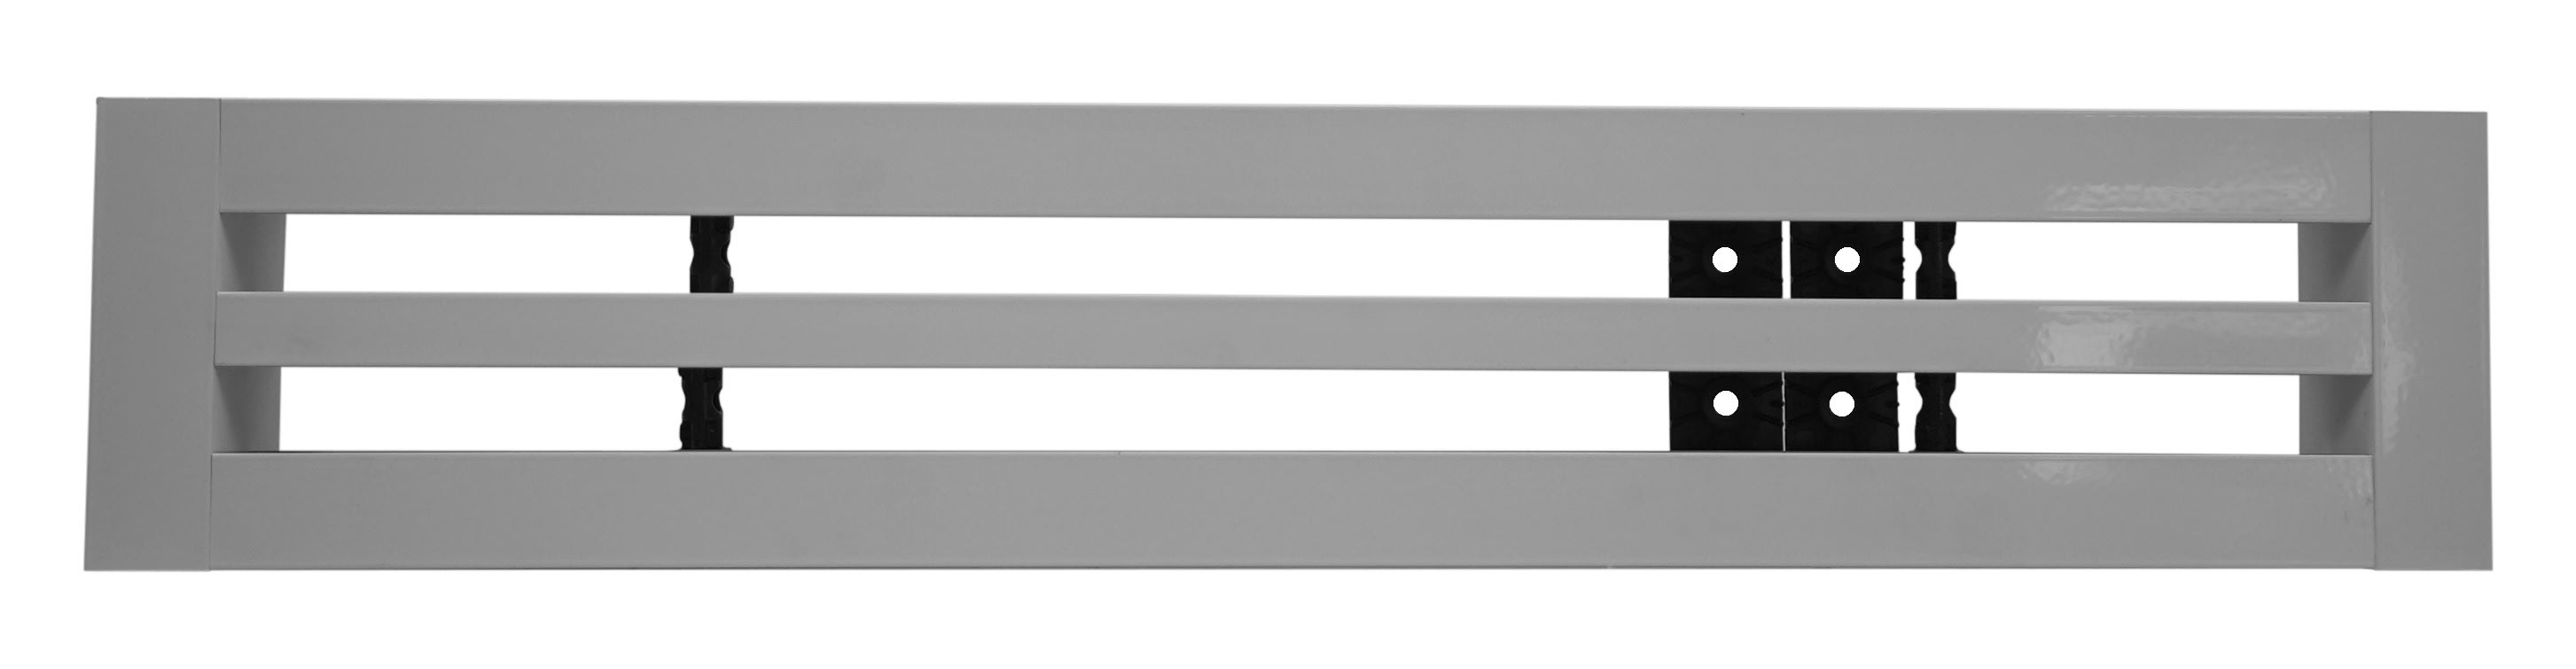 S&P - Diffuseur linéaire à 2 fentes réglables, plenum isolé, alu, longueur 535mm